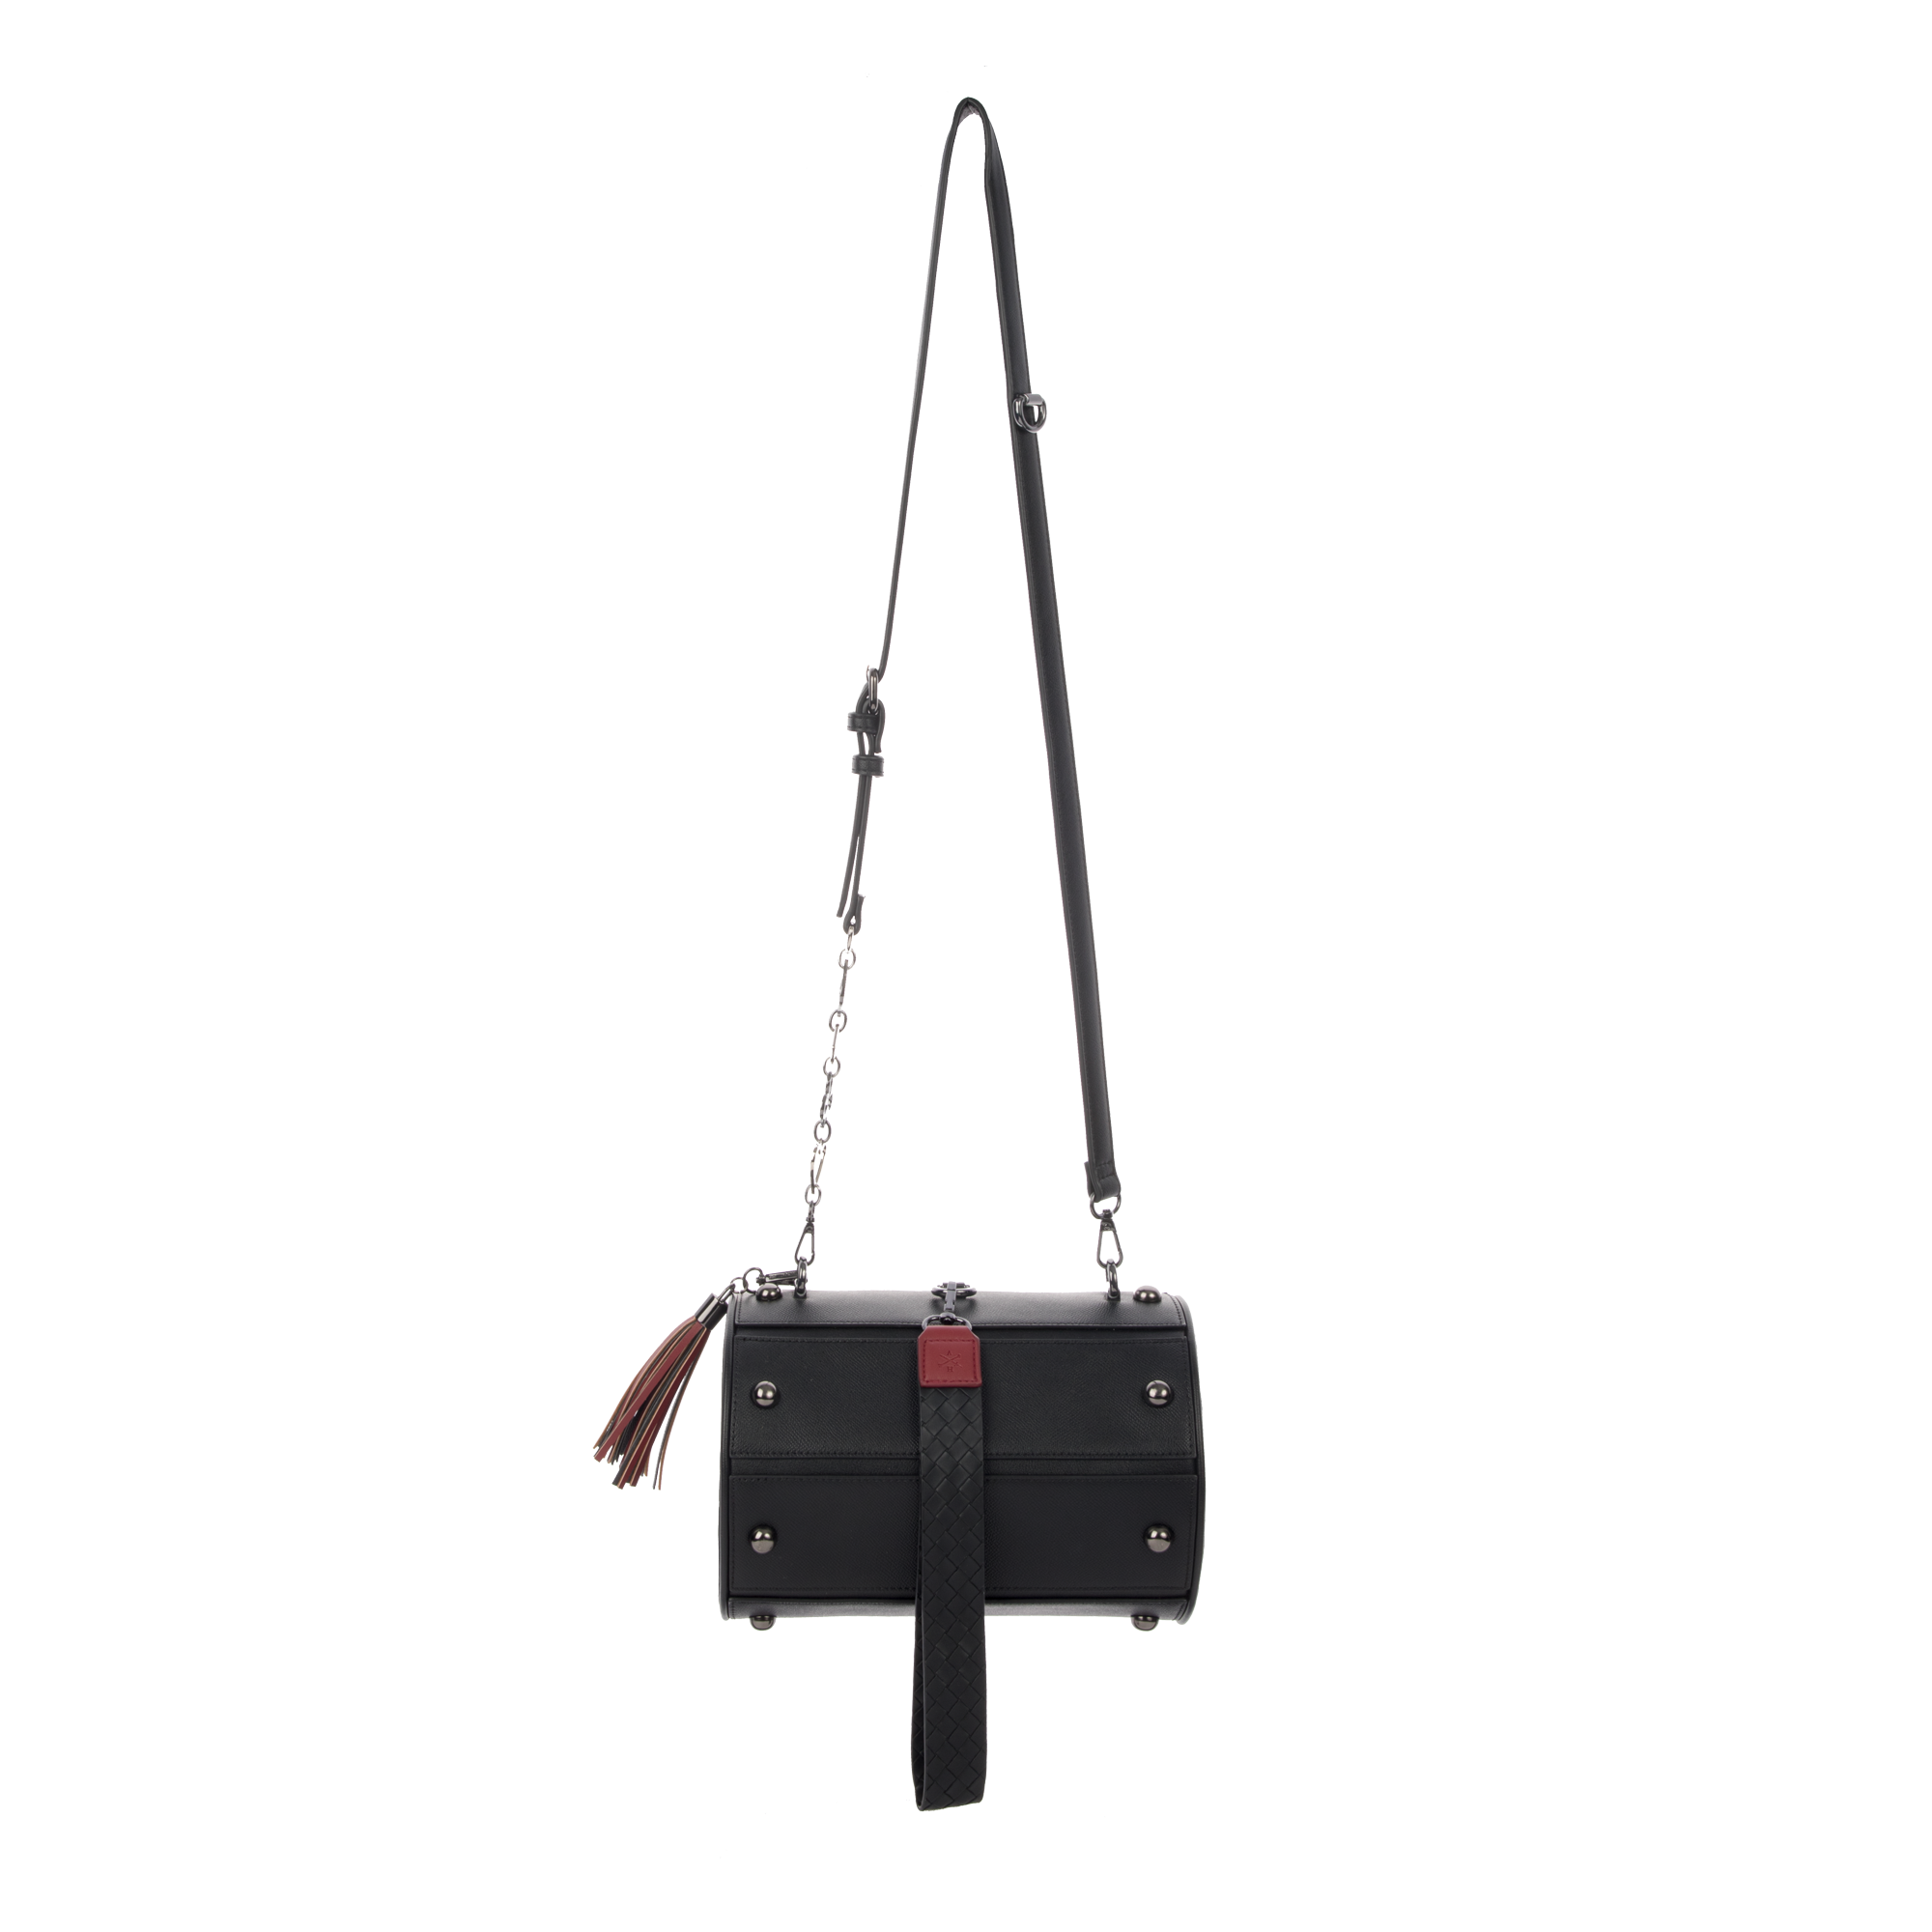 Harley Quinn Barrel Handbag